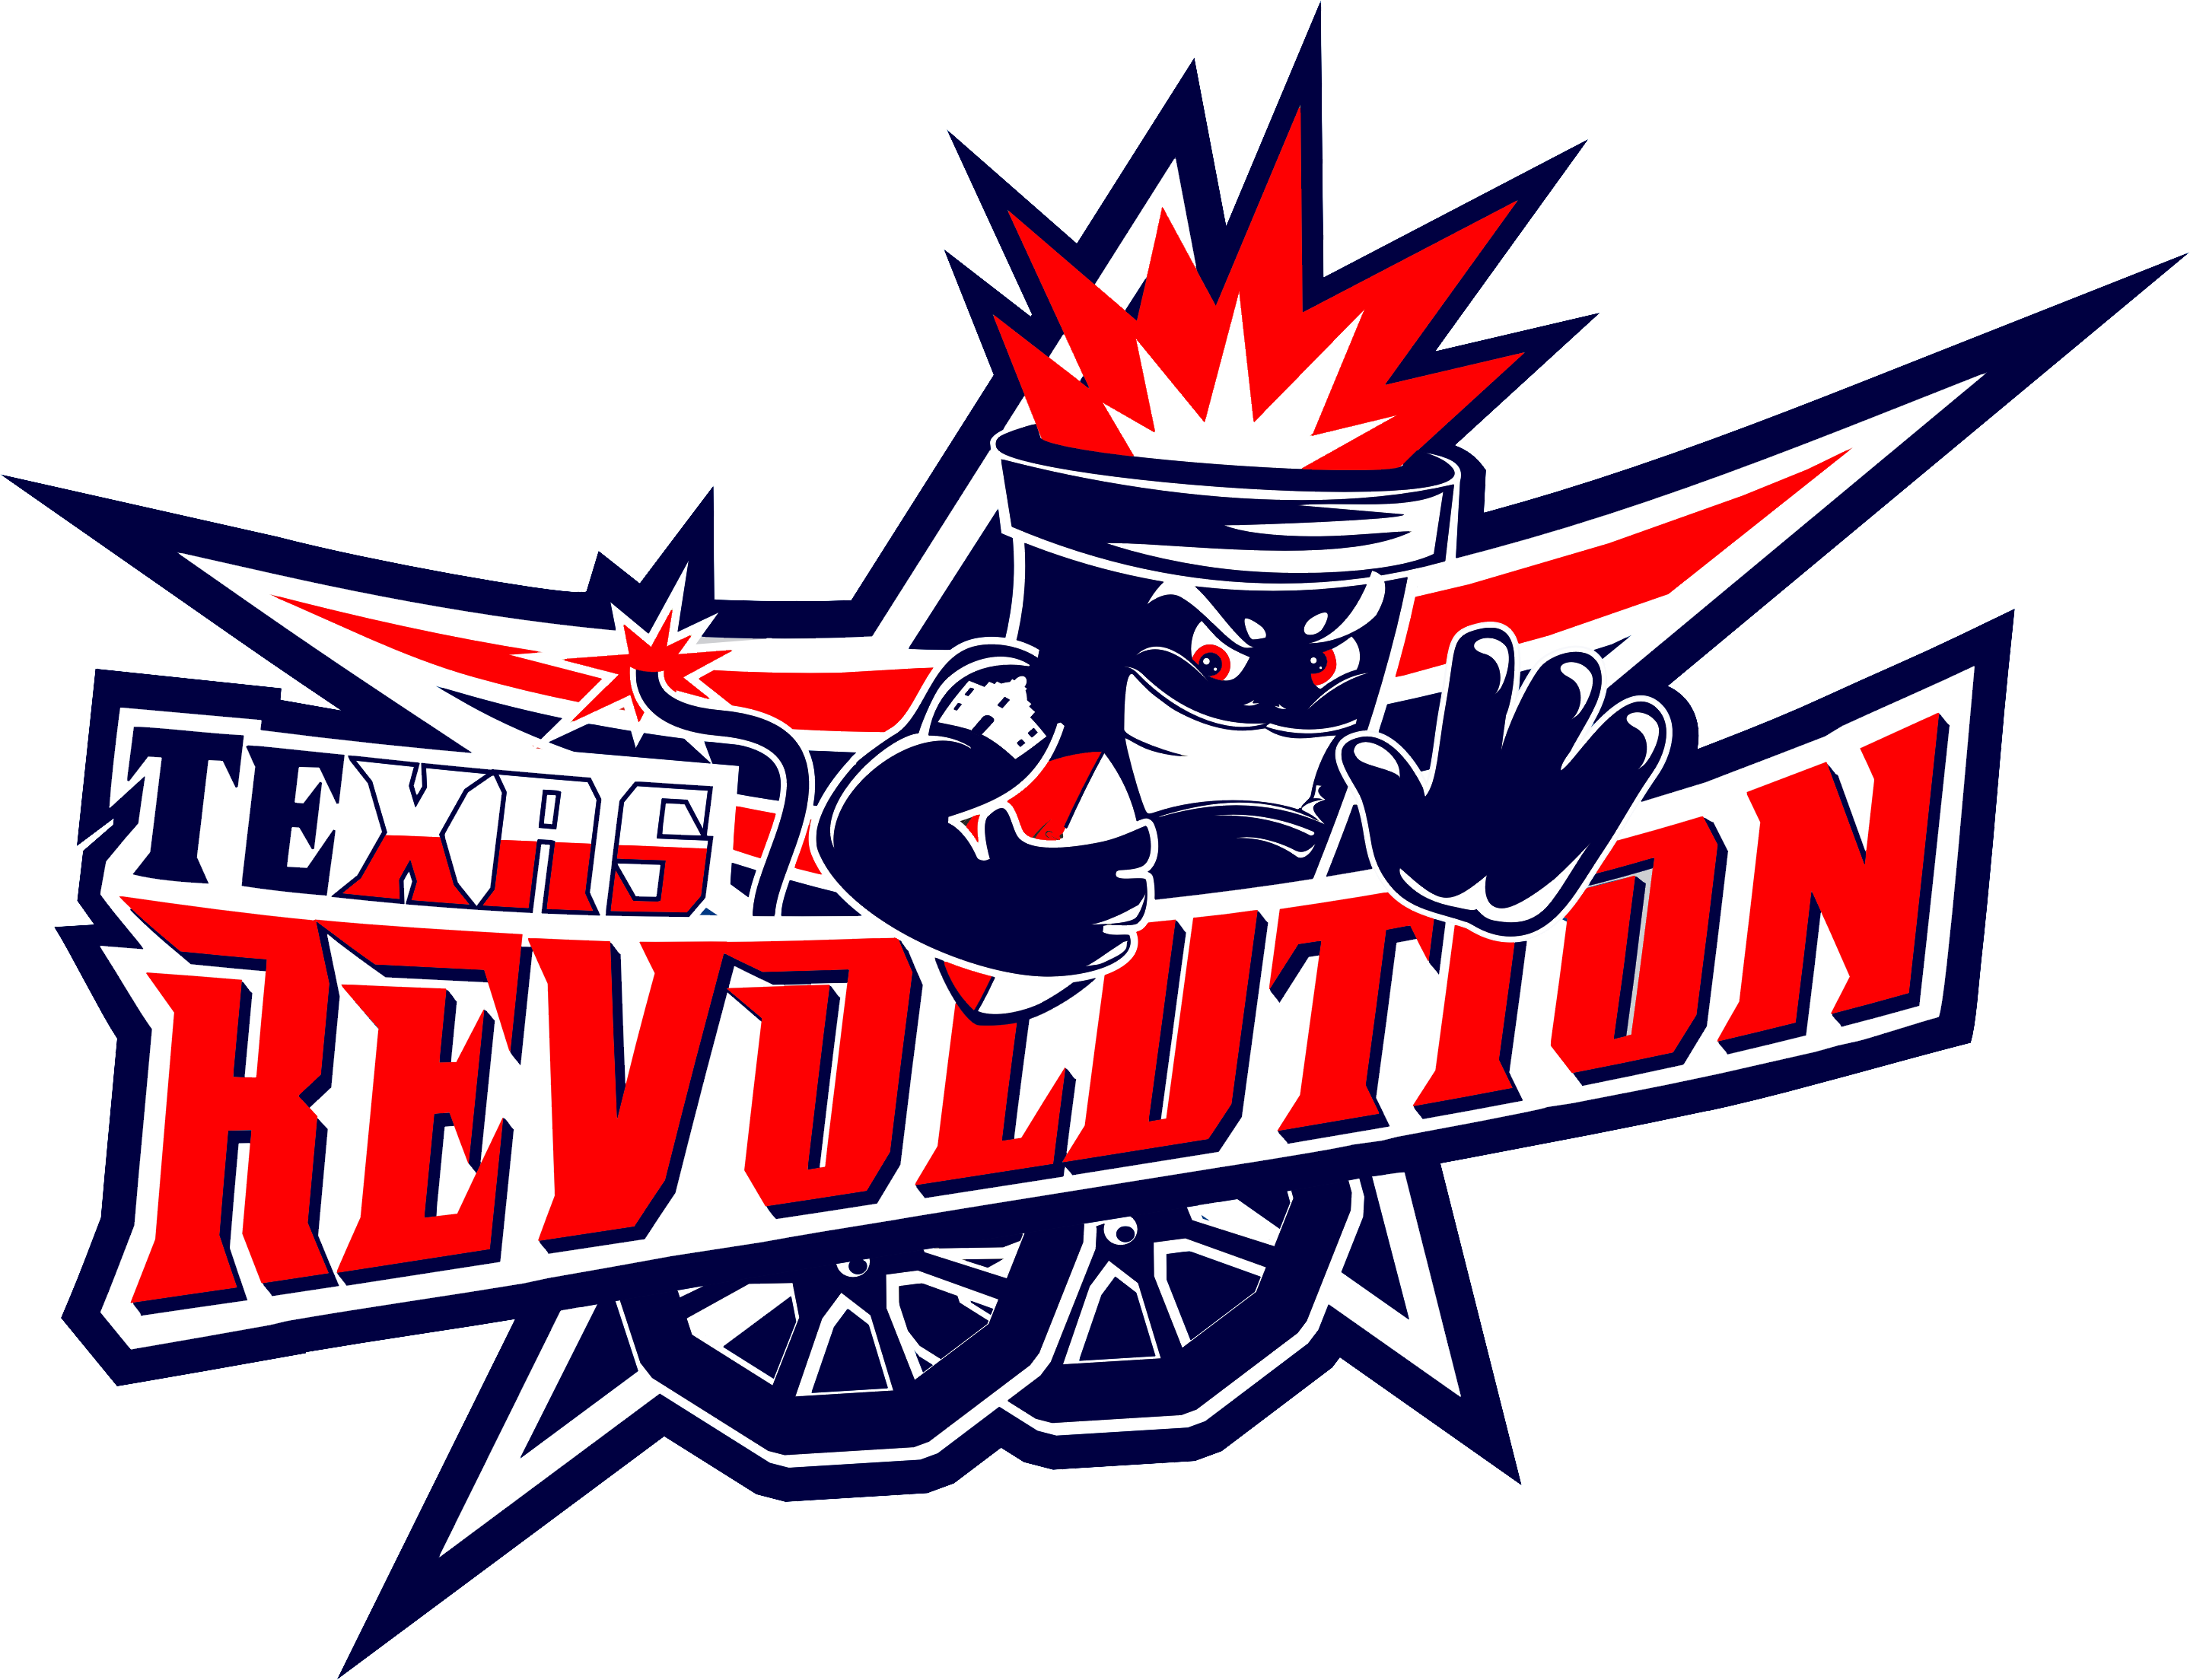 Tickets - Texas Revolution Football Logo (2878x2208)